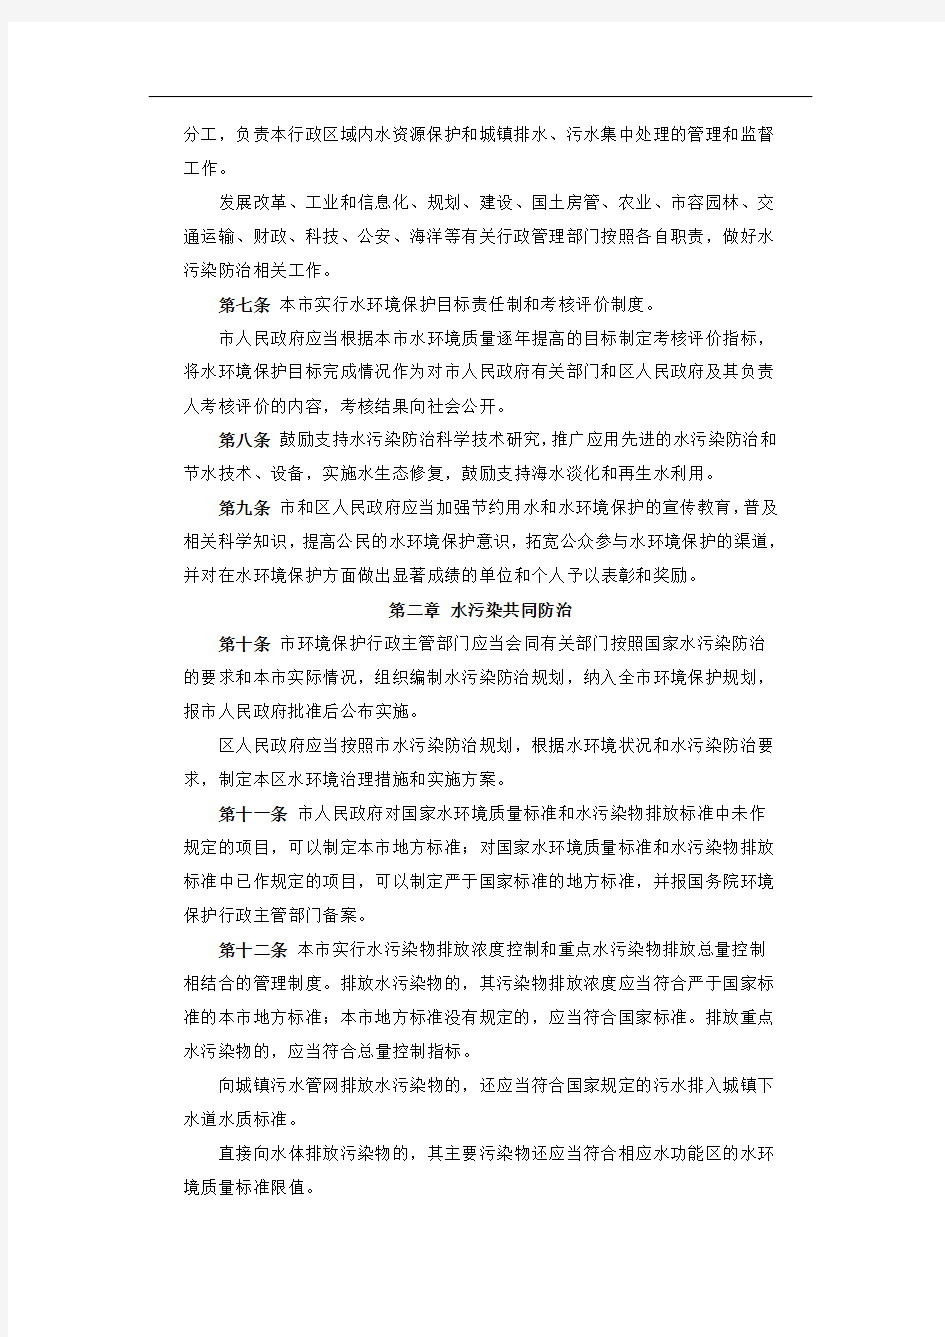 天津市水污染防治条例(2017年12月22日修订)